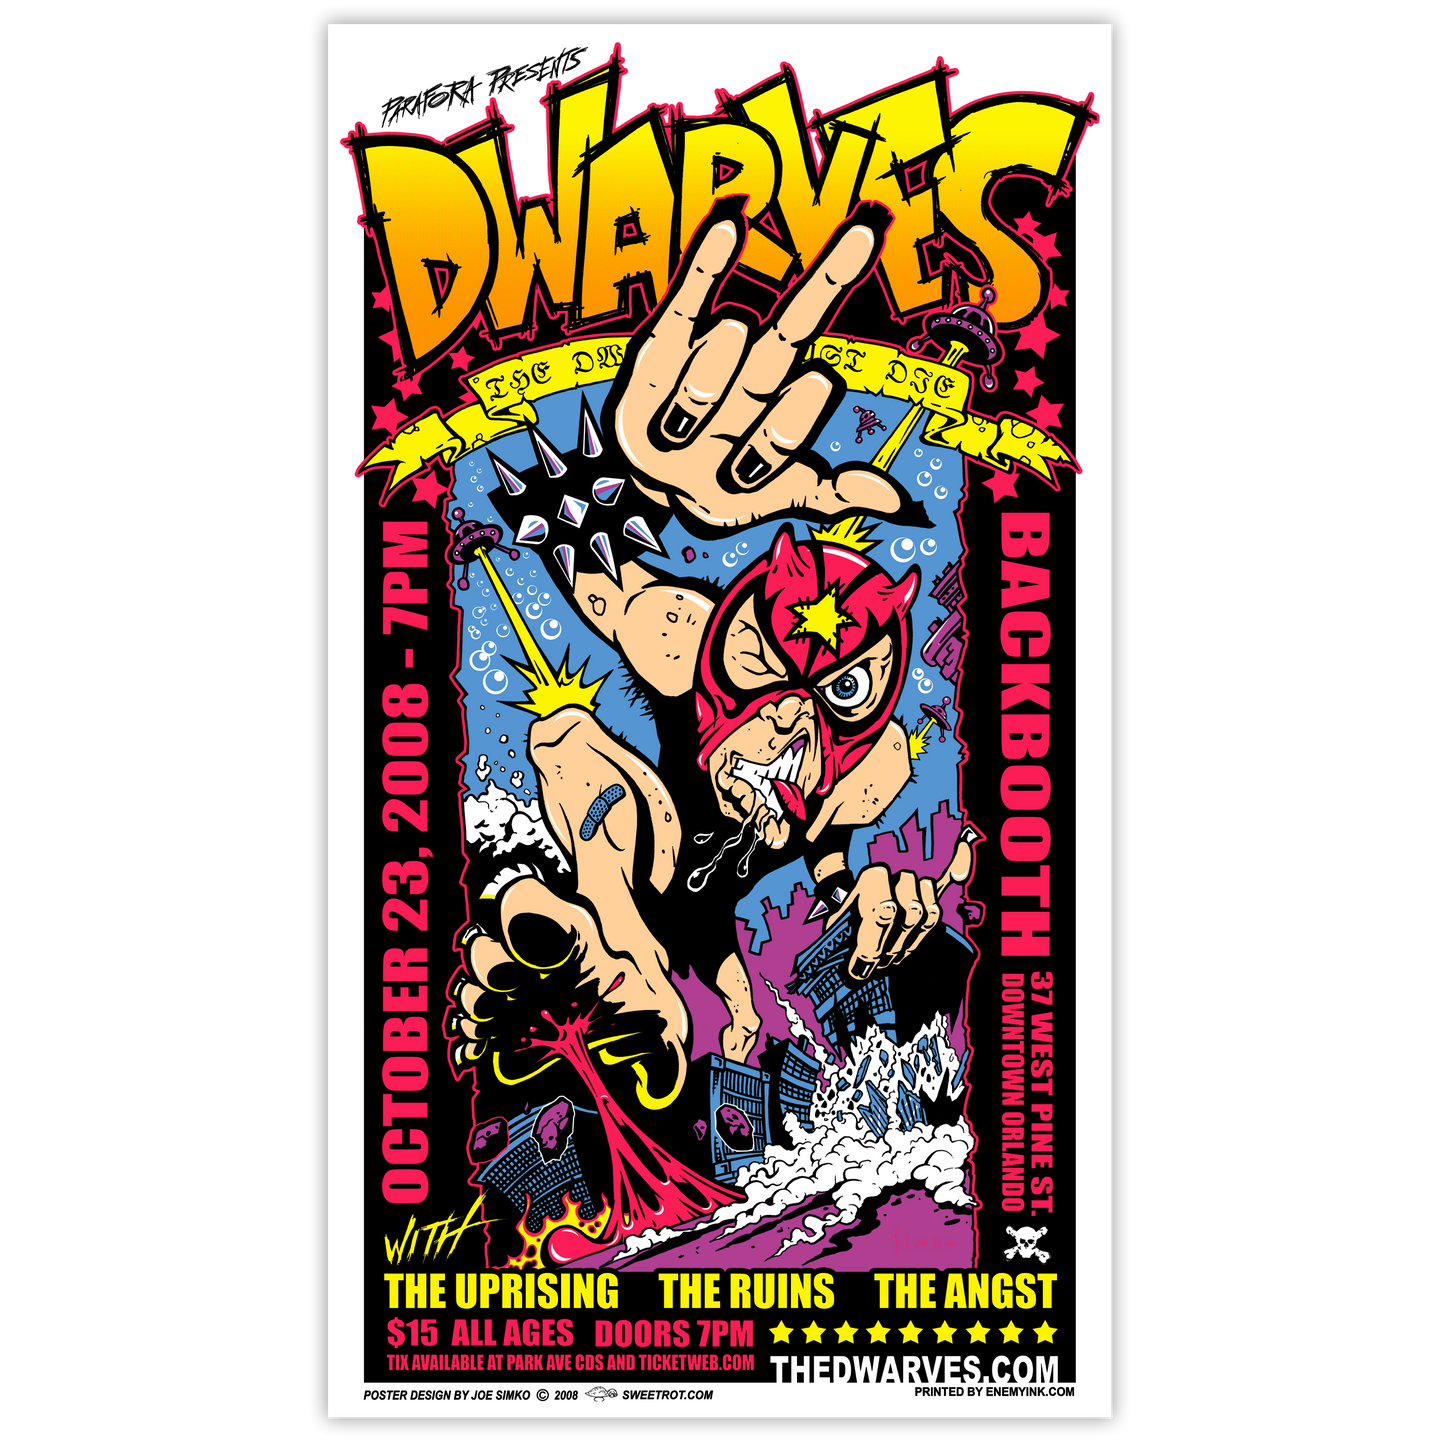 Dwarves - 10.23.08 Poster